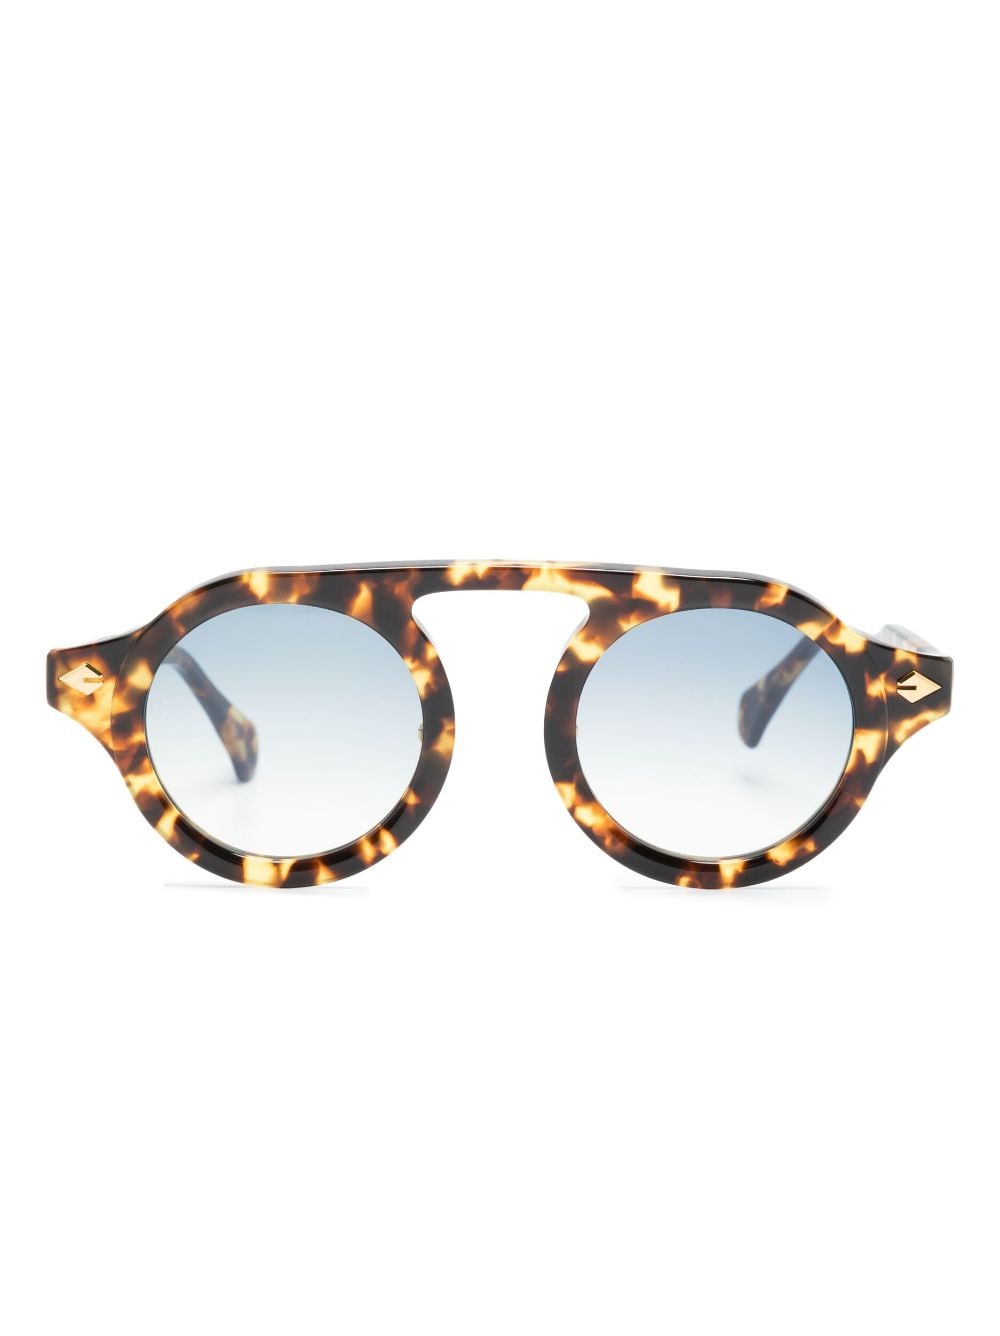 T Henri Eyewear tortoiseshell-effect round-frame sunglasses - Brown von T Henri Eyewear